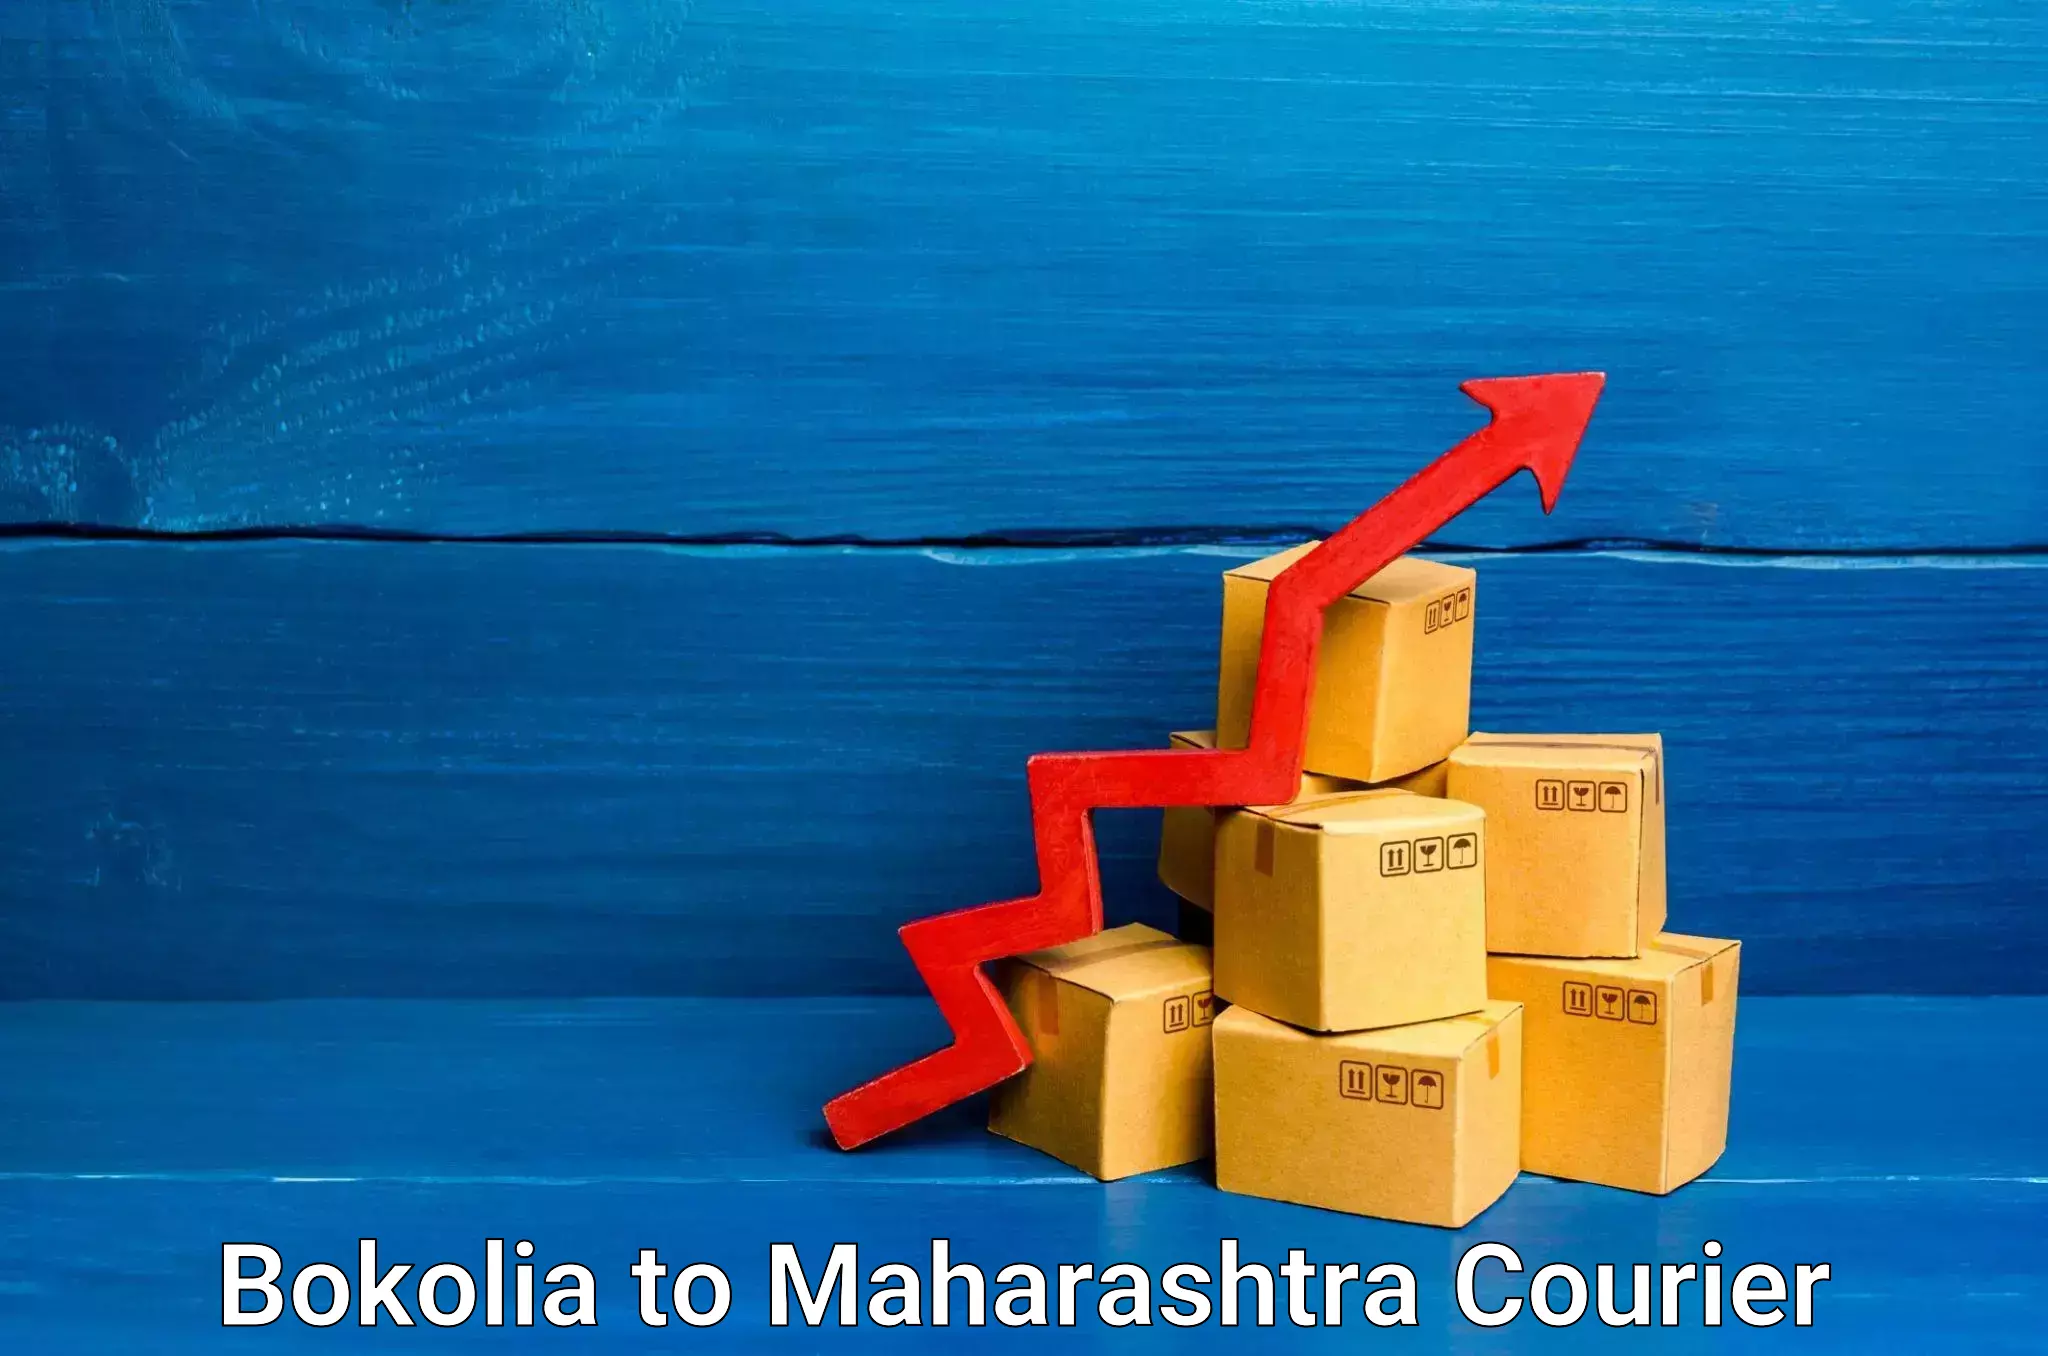 Courier service comparison Bokolia to Ballarpur